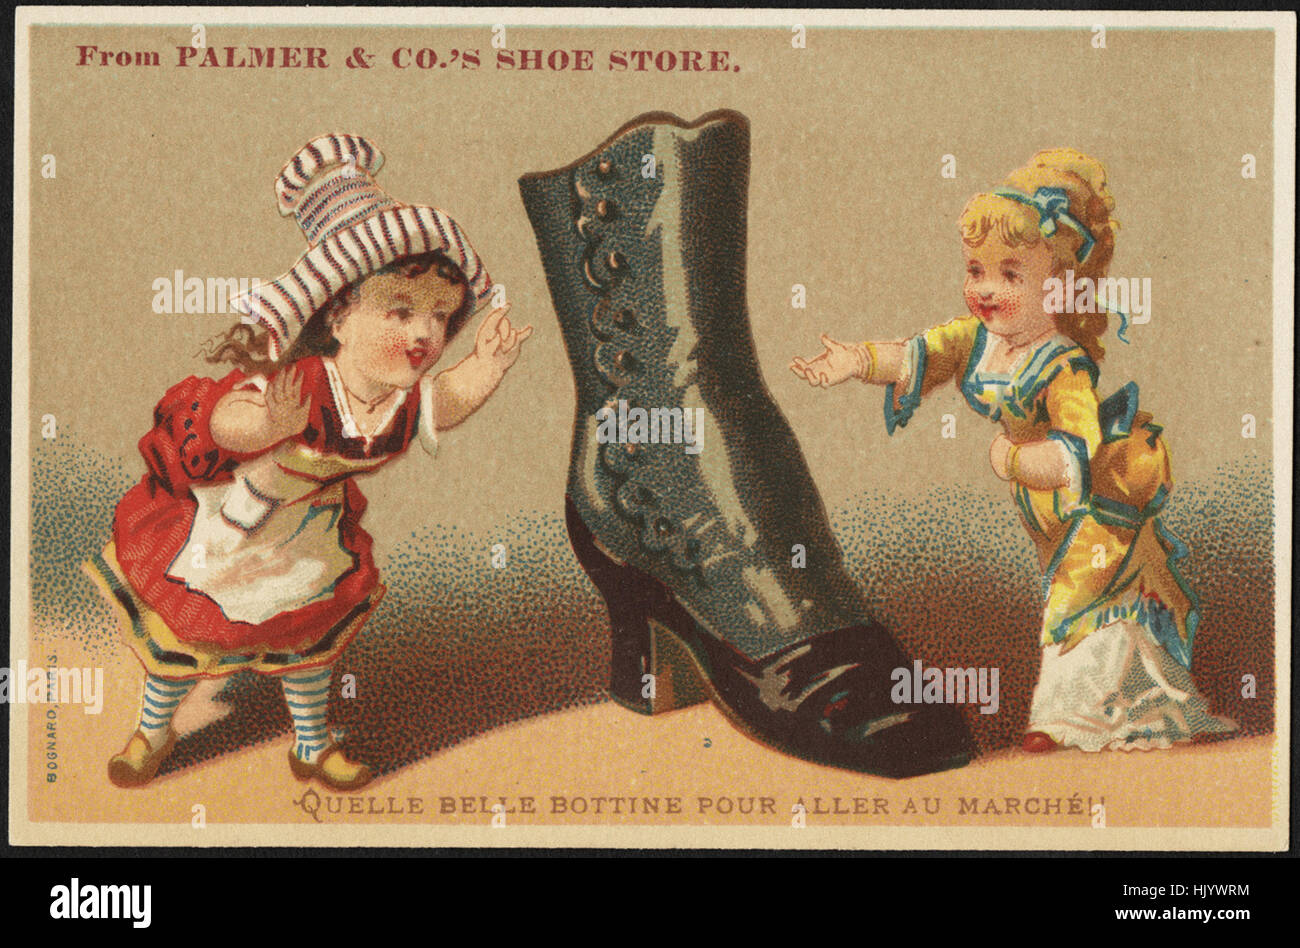 From Palmer & Co's shoe store. Quelle belle bottine pour aller au marche!! Stock Photo